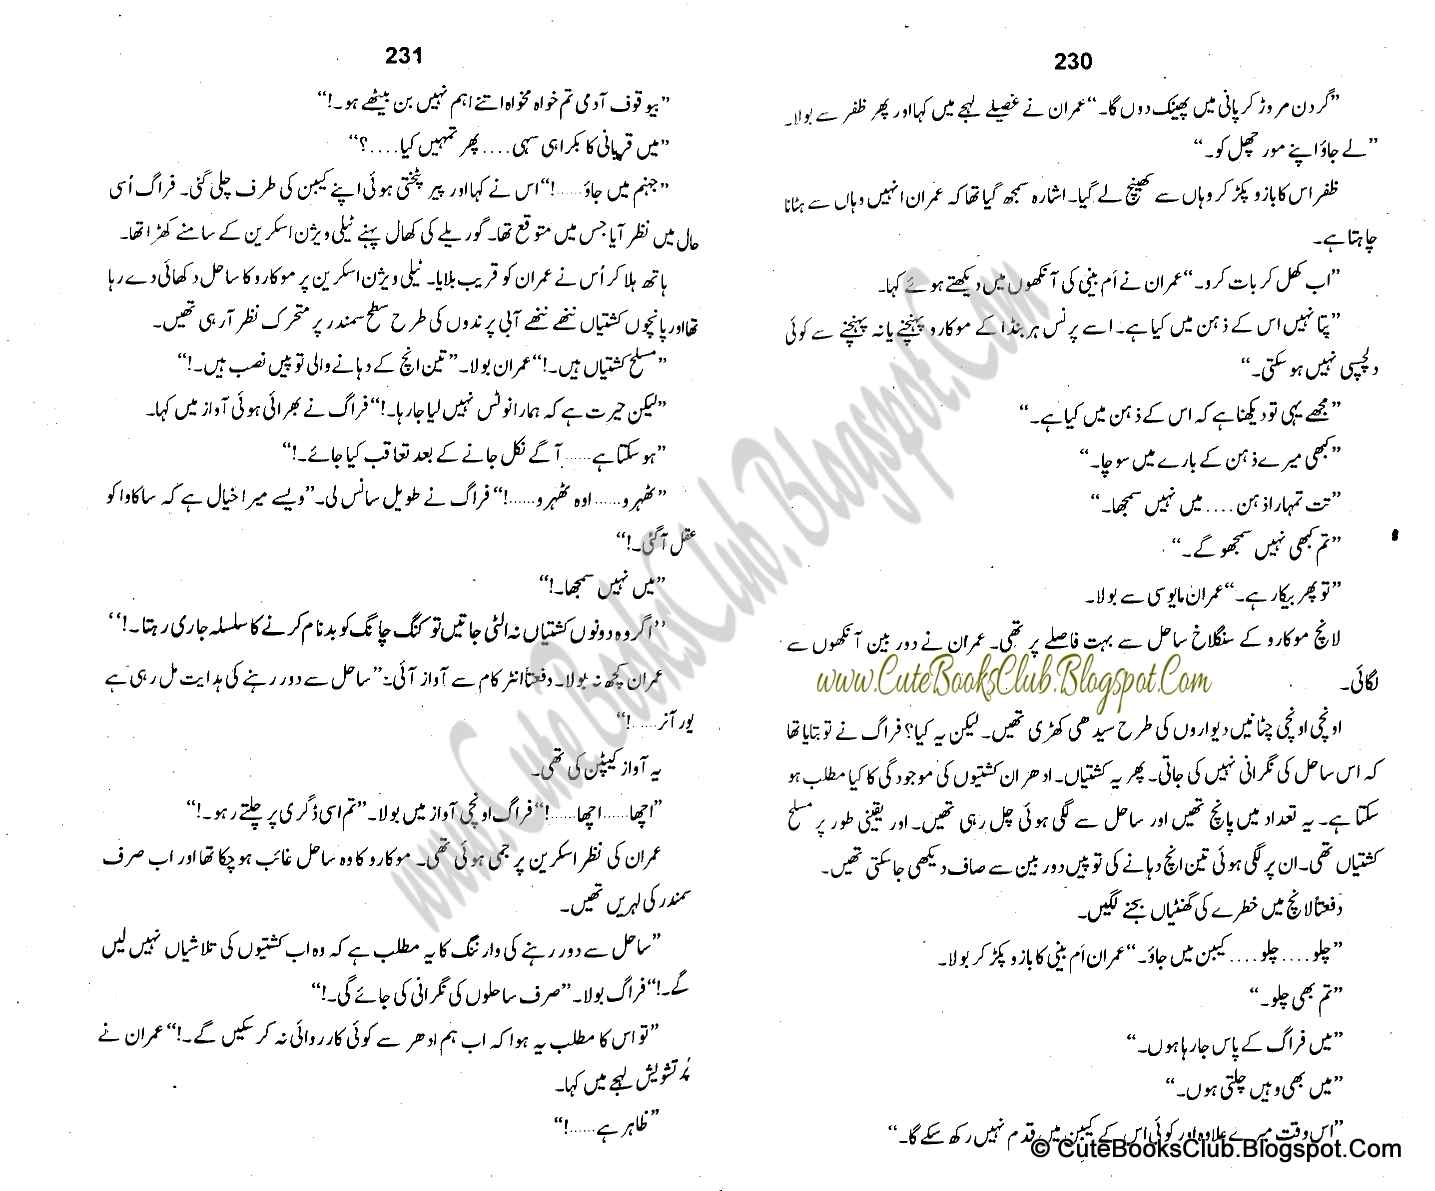 070-Samandar Ka Shagaf, Imran Series By Ibne Safi (Urdu Novel)